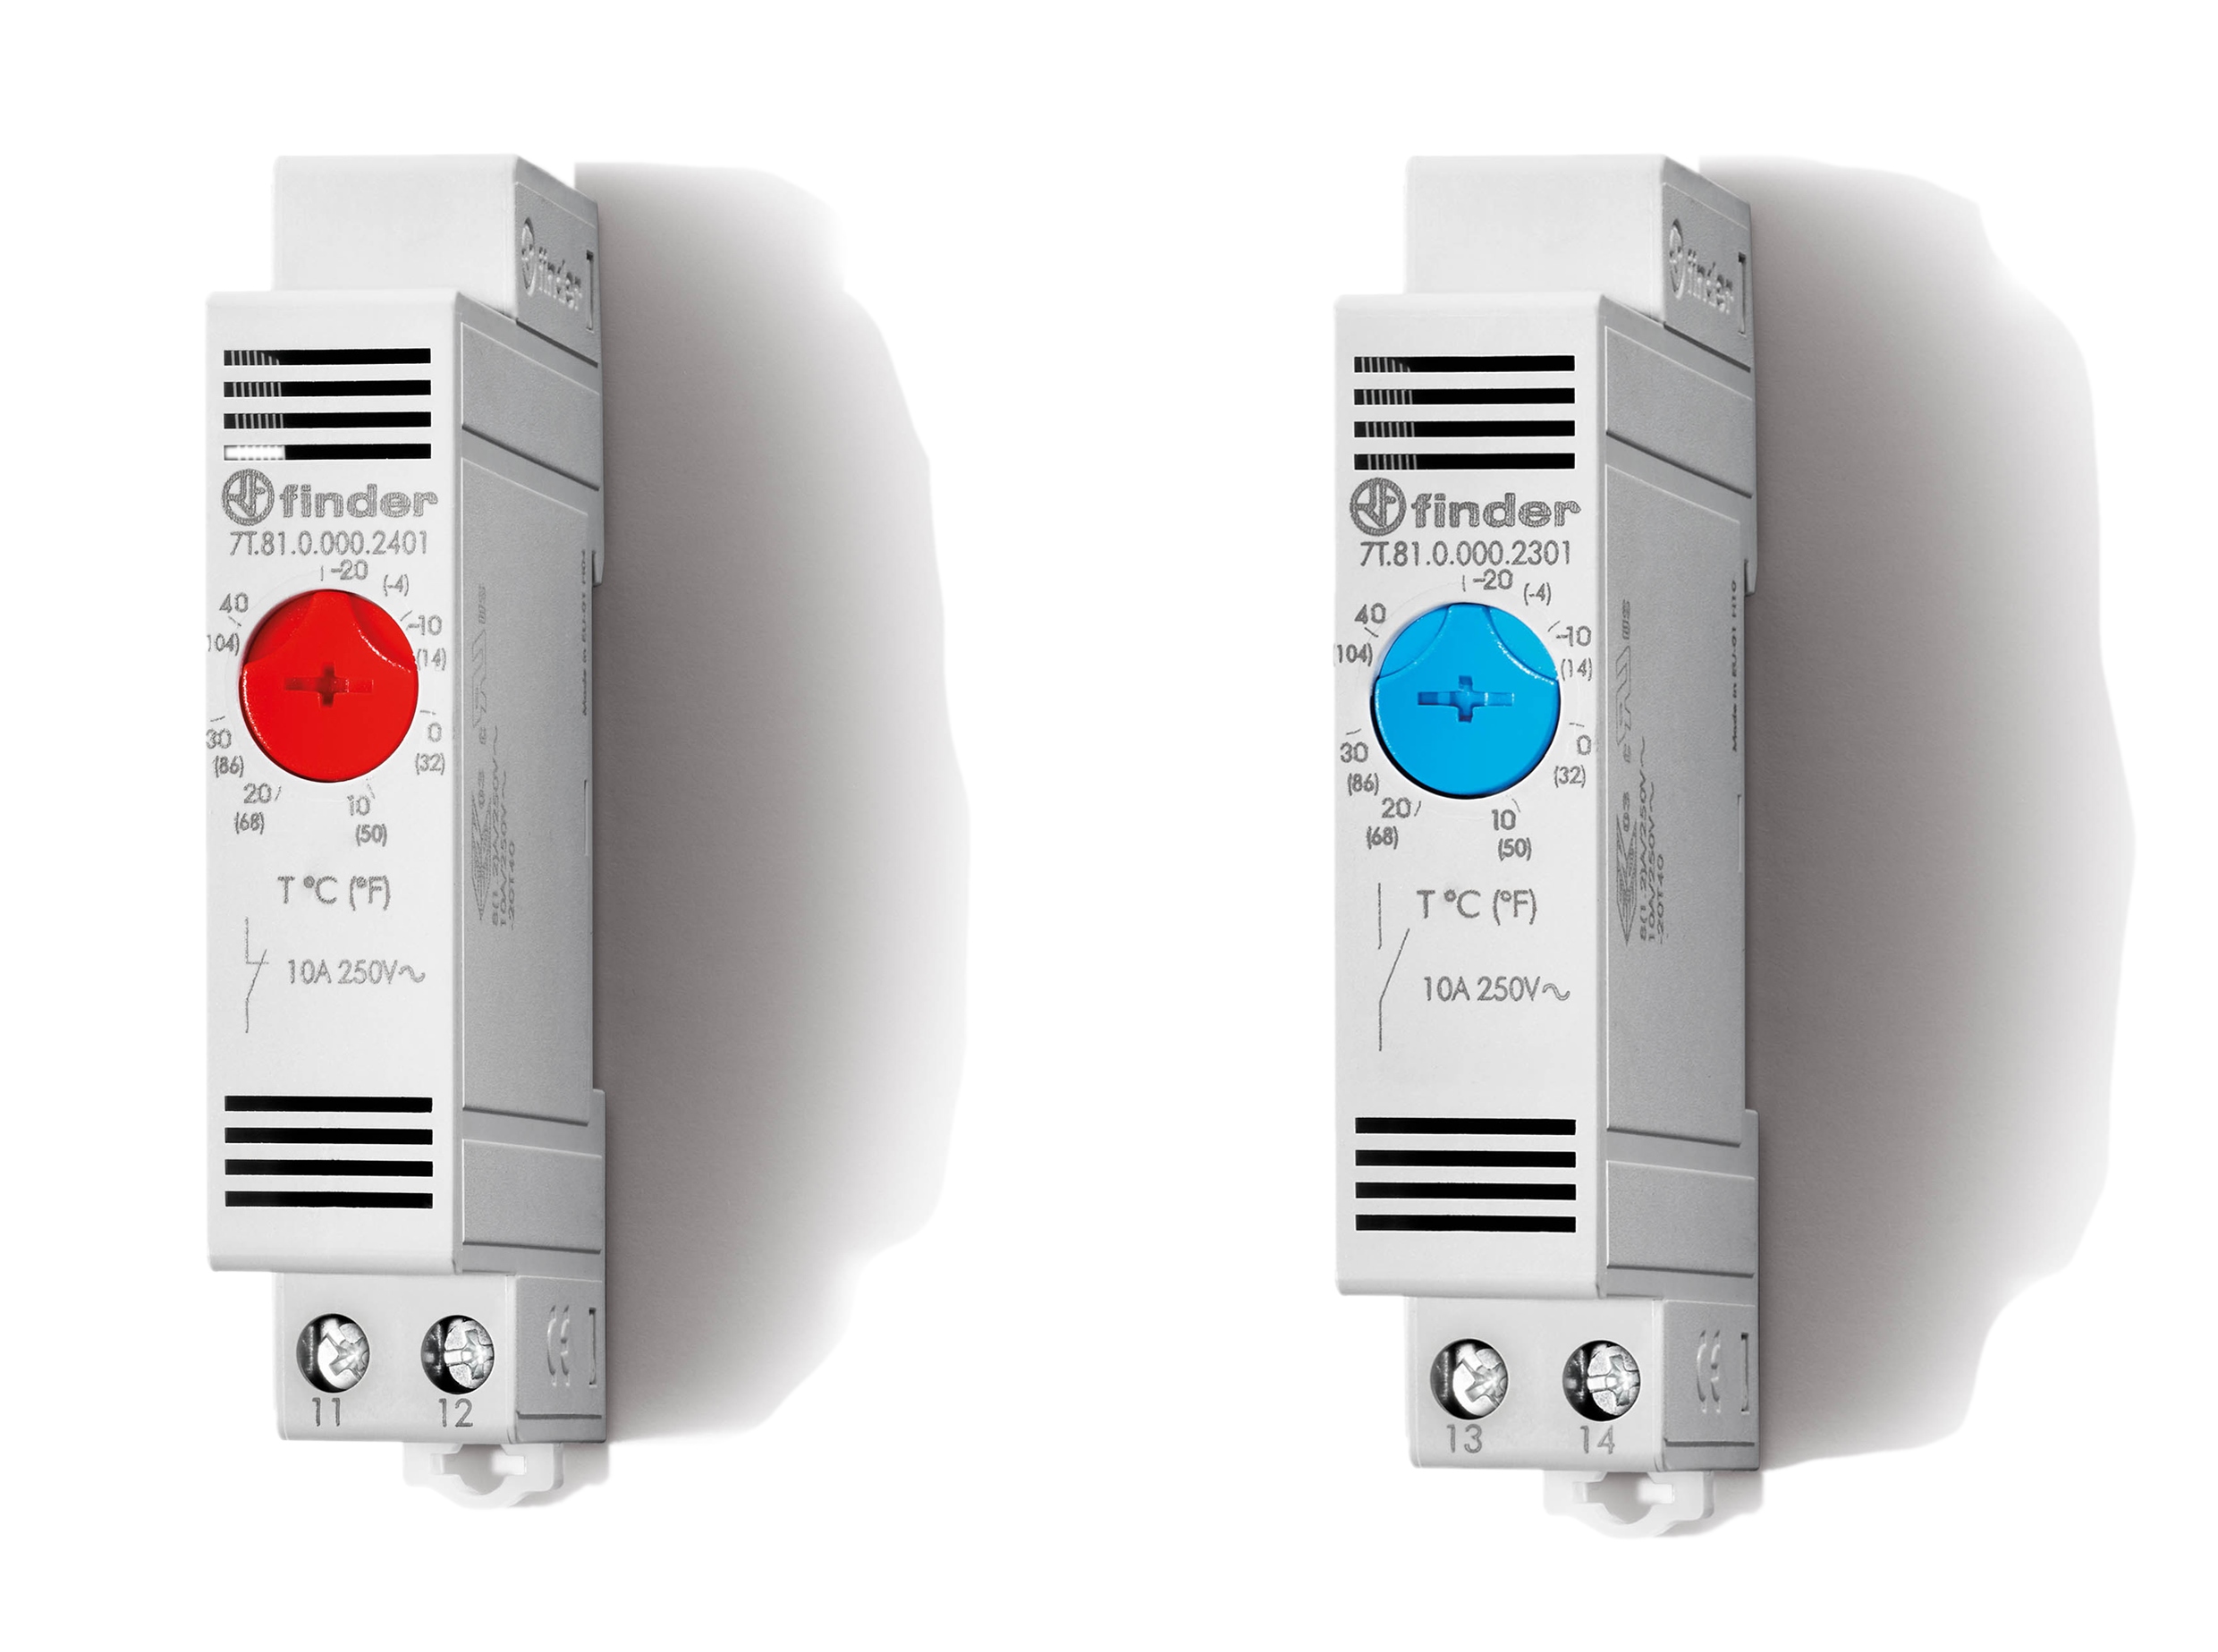 Die Thermostate der Serie 7T von Finder sorgen für eine genaue Temperaturüberwachung im Schaltschrank. Sie verhindern Kondensation und Überhitzung zuverlässig (Heizungsthermostat links und Lüftungsthermostat rechts im Bild). (Bild: Finder GmbH)